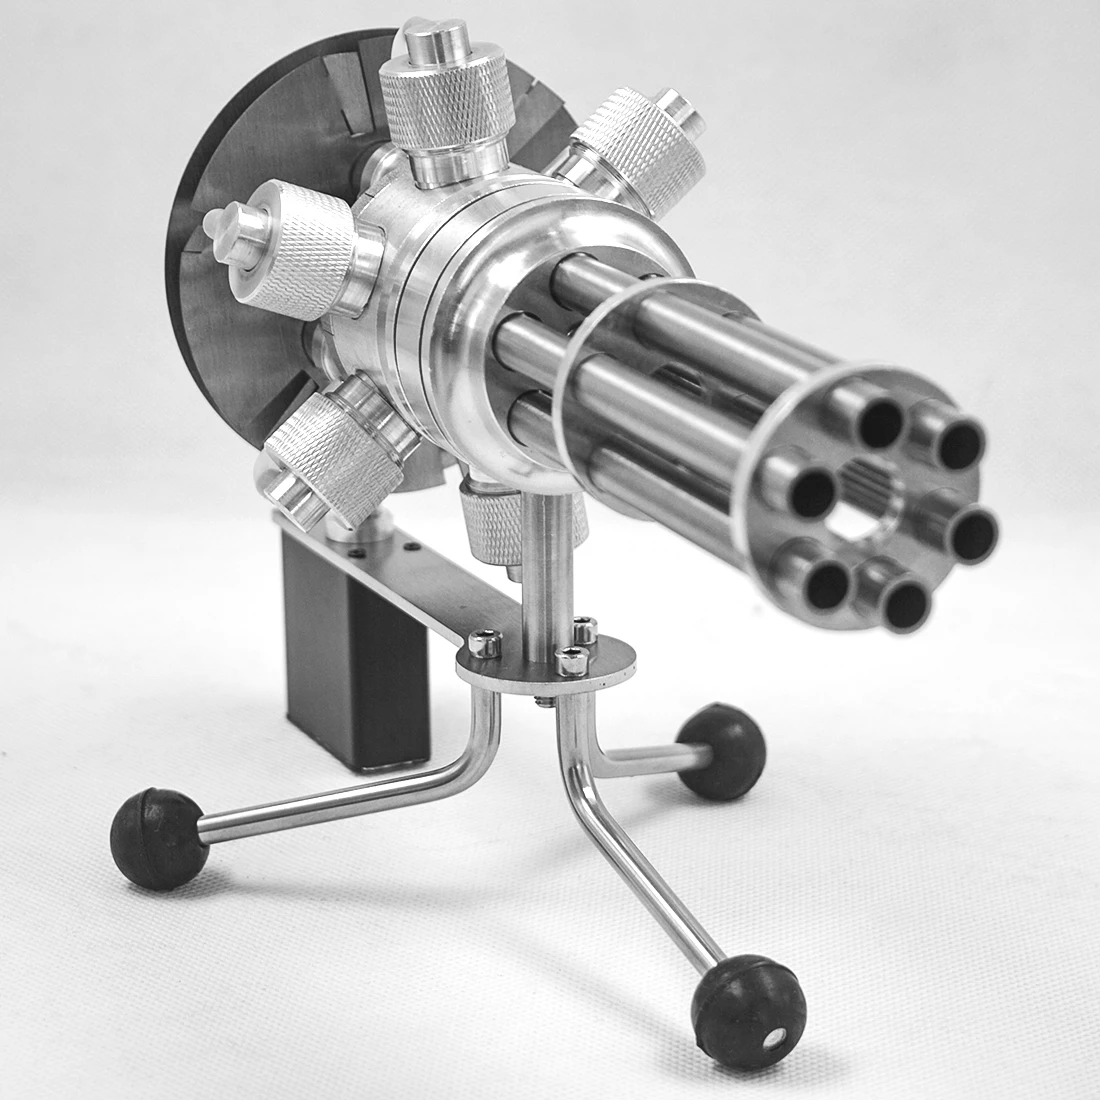 Высокое качество 1 шт. шесть цилиндров металлическая вращающаяся модель двигателя Стирлинга подарок из бутика для детей взрослых модель